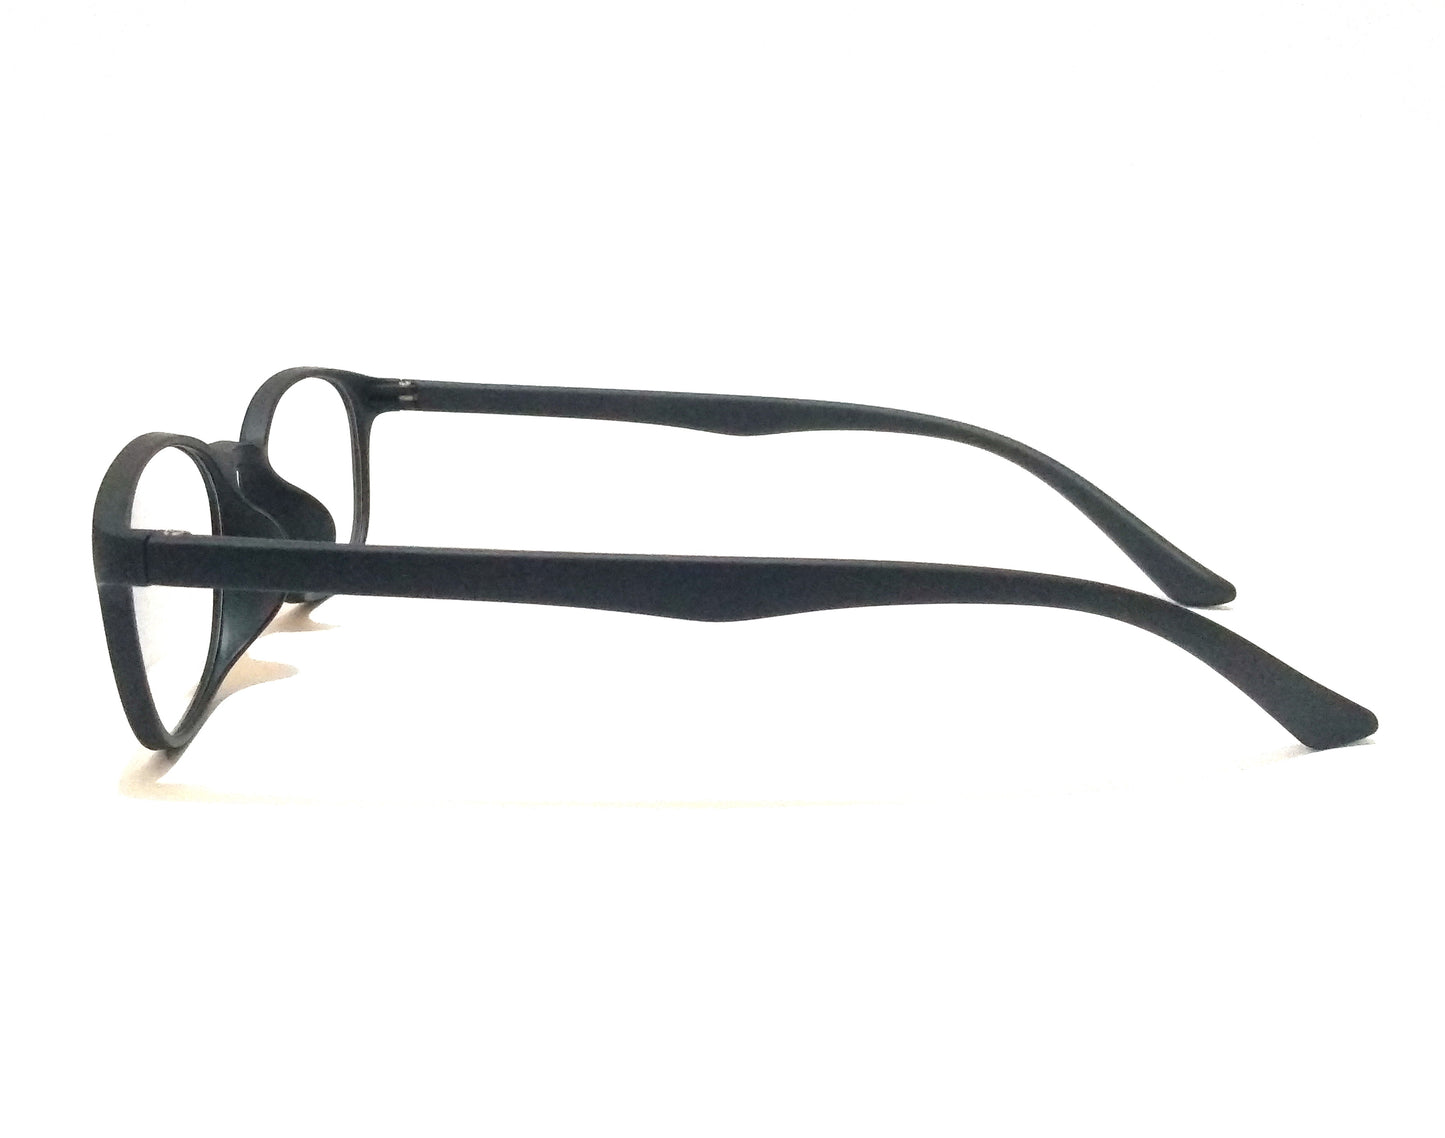 Black Glasses for Small Face for Men Women Eyeglasses 17077